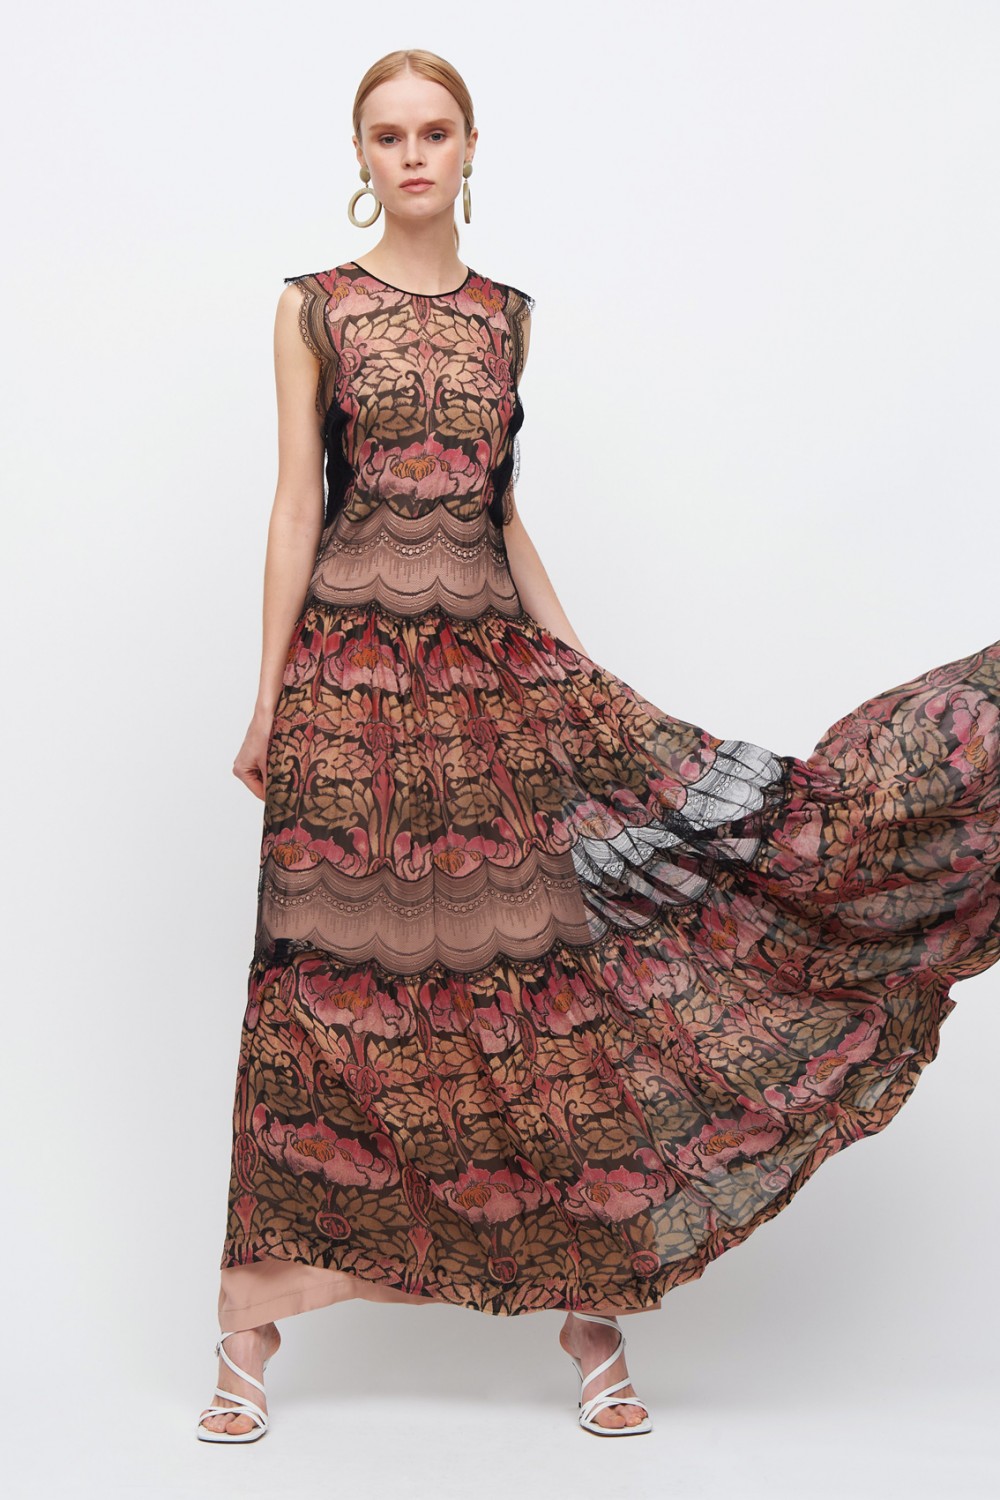 Vendita Abbigliamento Usato FIrmato - Silk and lace chiffon dress - Alberta Ferretti - Drexcode -4